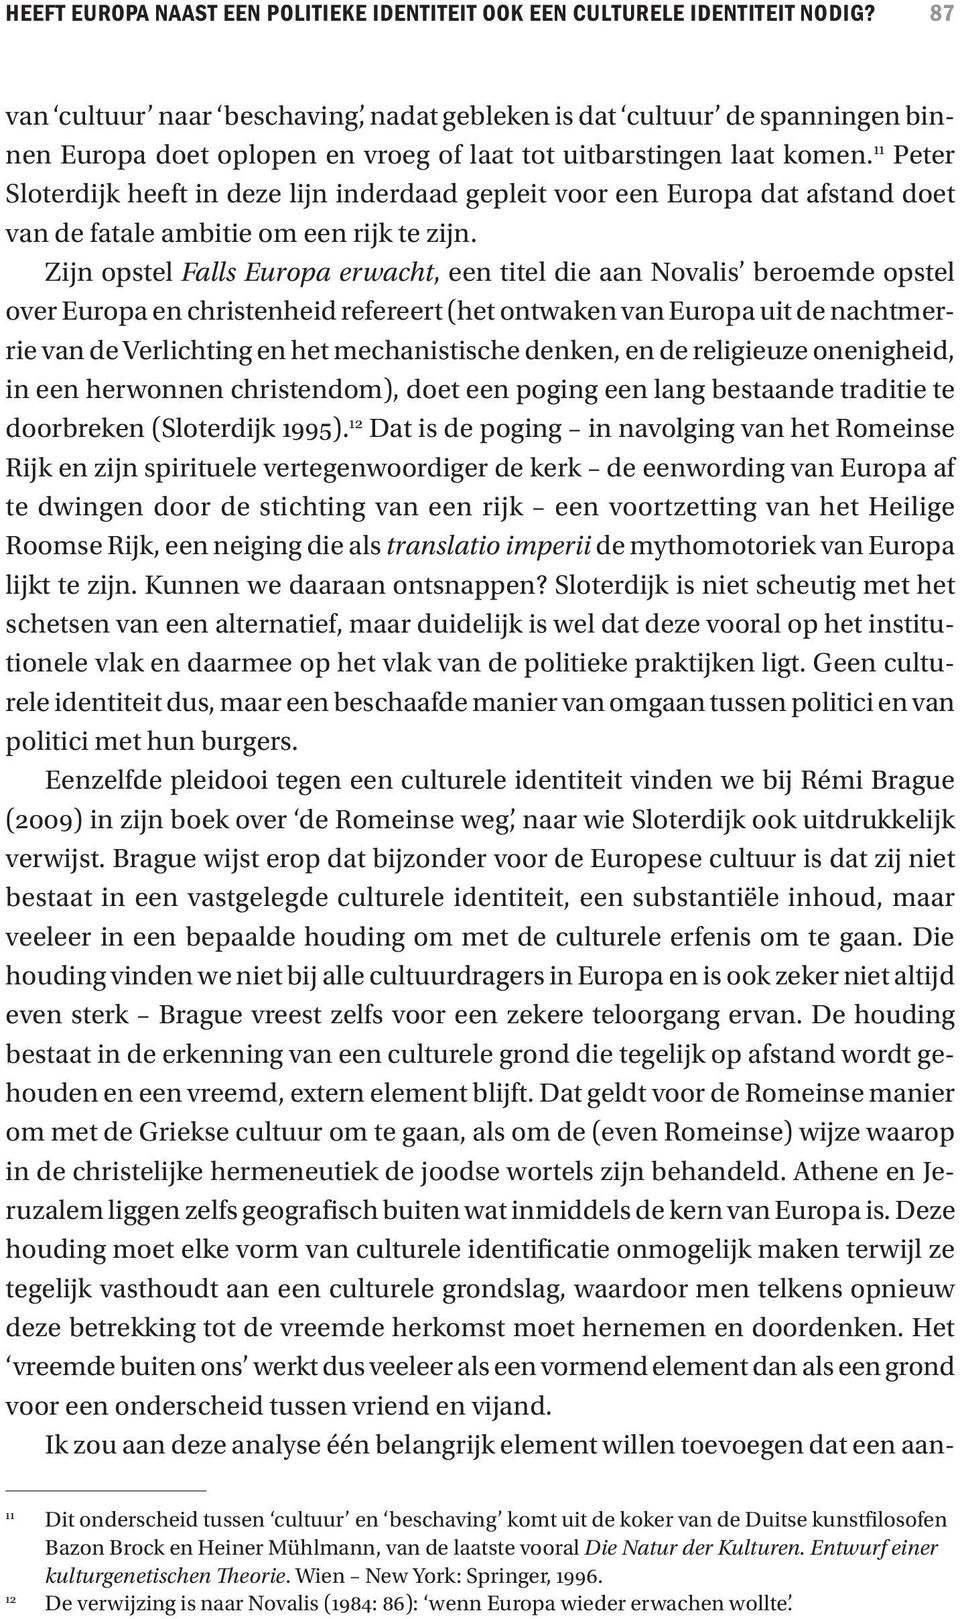 11 Peter Sloterdijk heeft in deze lijn inderdaad gepleit voor een Europa dat afstand doet van de fatale ambitie om een rijk te zijn.